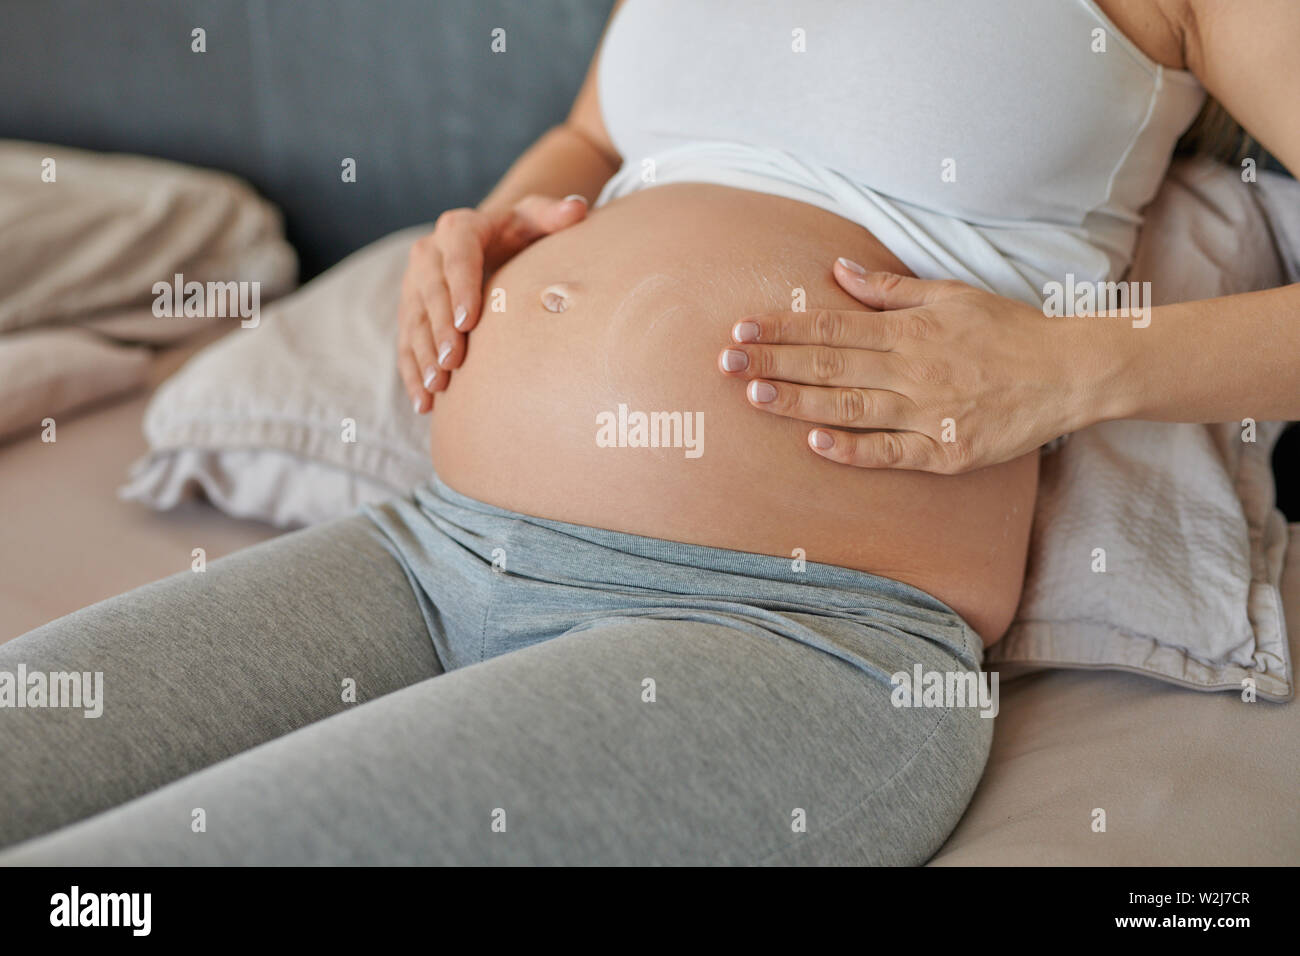 Jeune femme enceinte se frotter la crème hydratante sur son ventre pour hydrater sa peau et réduire le risque de vergetures après l'accouchement Banque D'Images